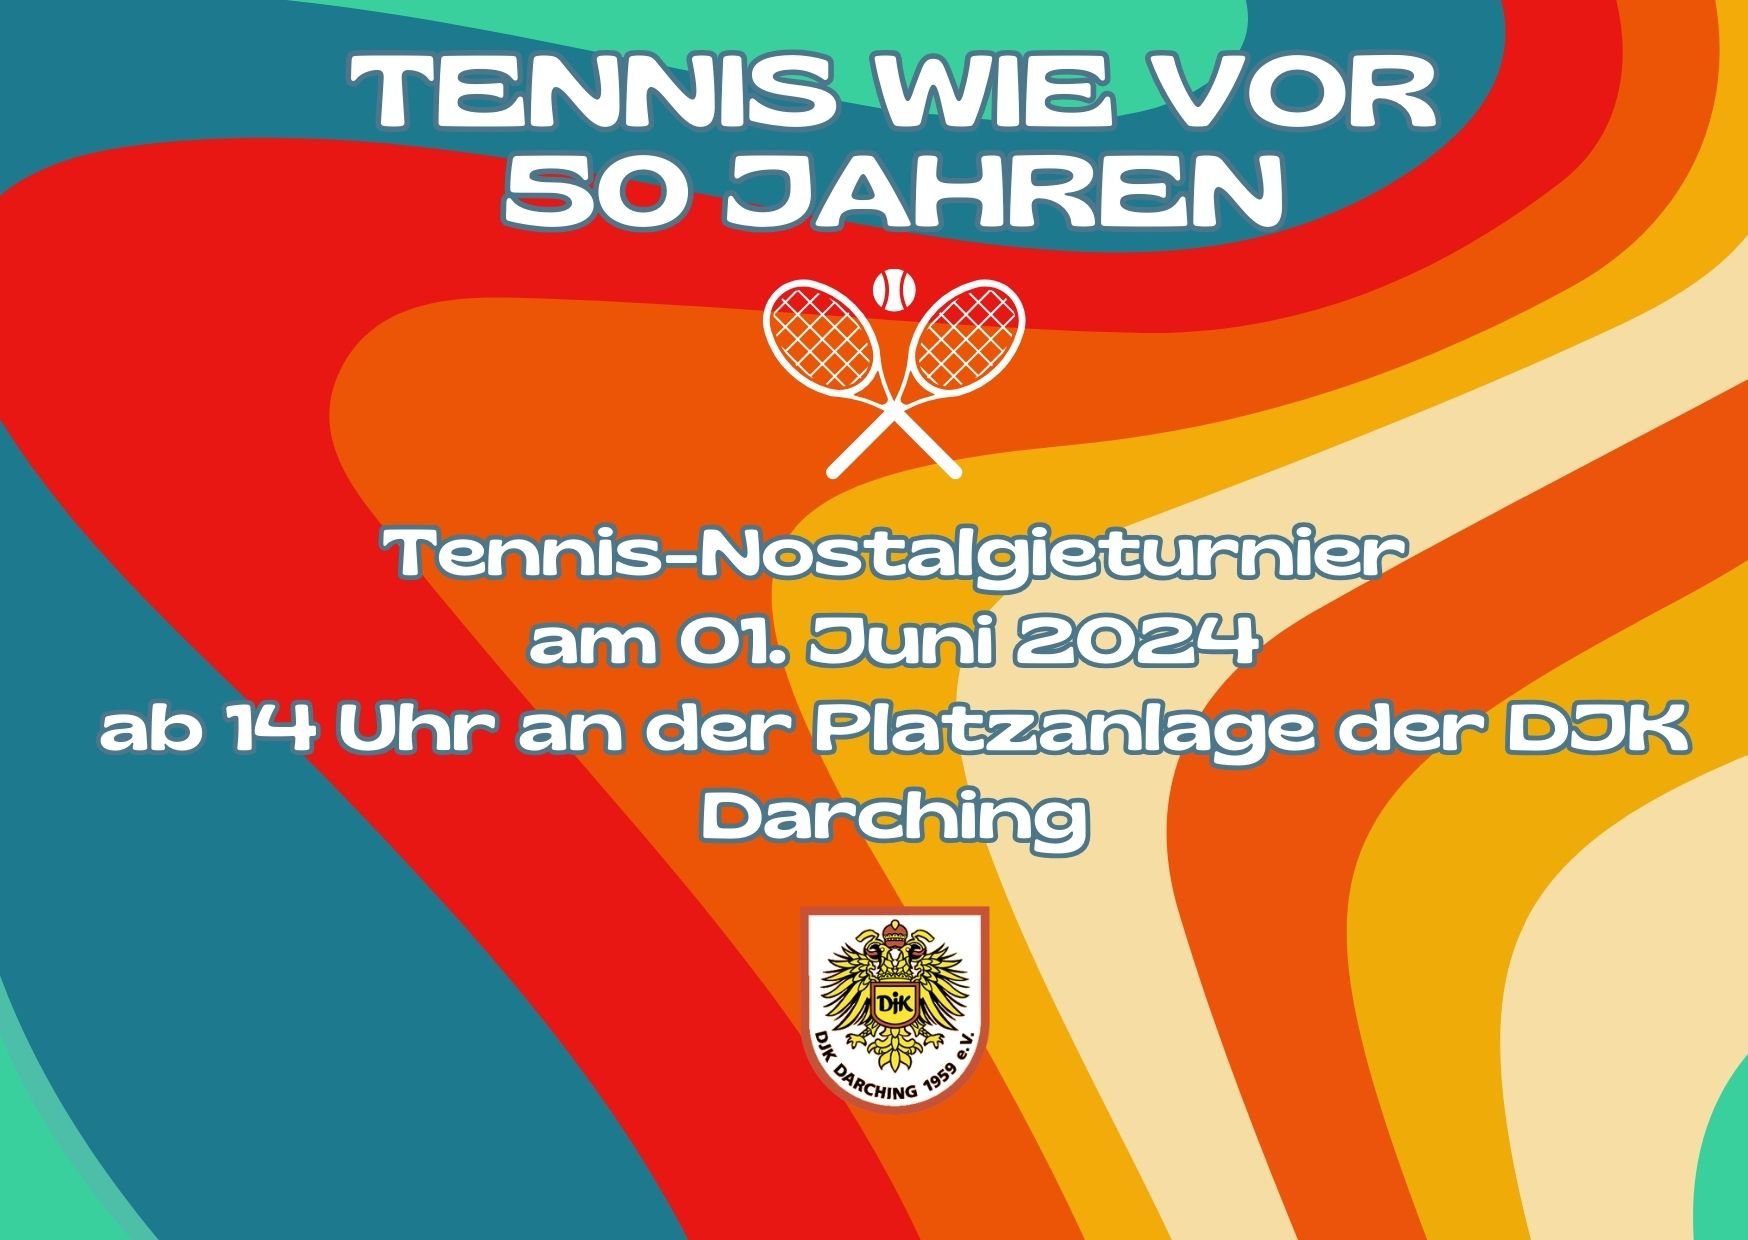 Einladung zum Tennis-Nostalgieturnier